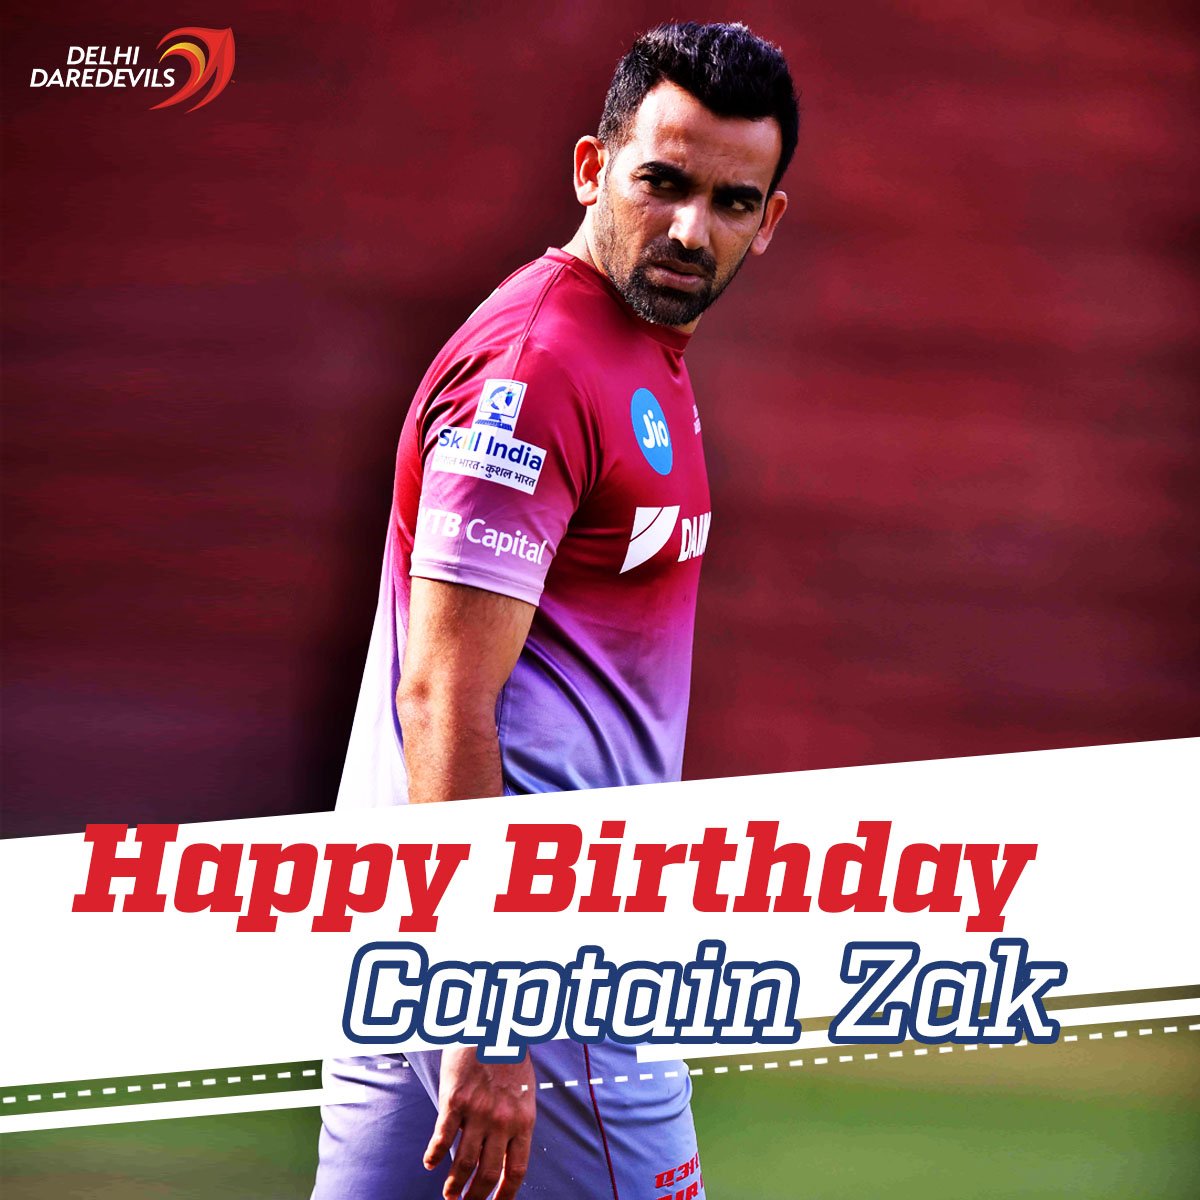 Happy birthday Captain Zaheer Khan. 